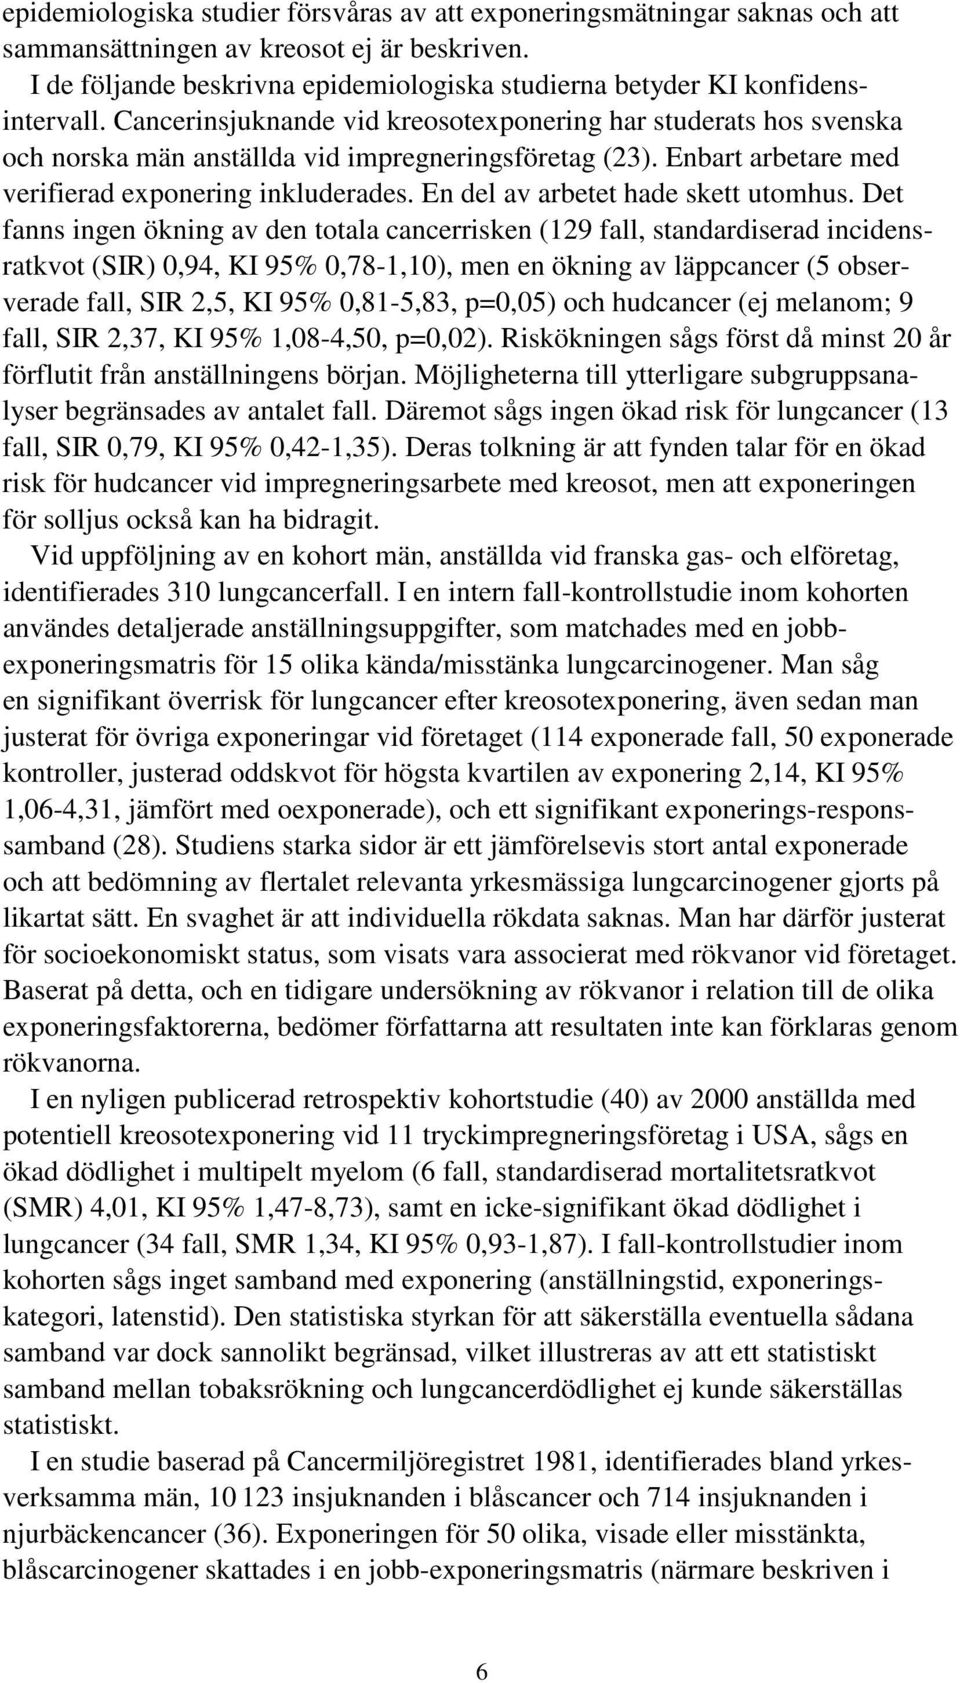 Cancerinsjuknande vid kreosotexponering har studerats hos svenska och norska män anställda vid impregneringsföretag (23). Enbart arbetare med verifierad exponering inkluderades.